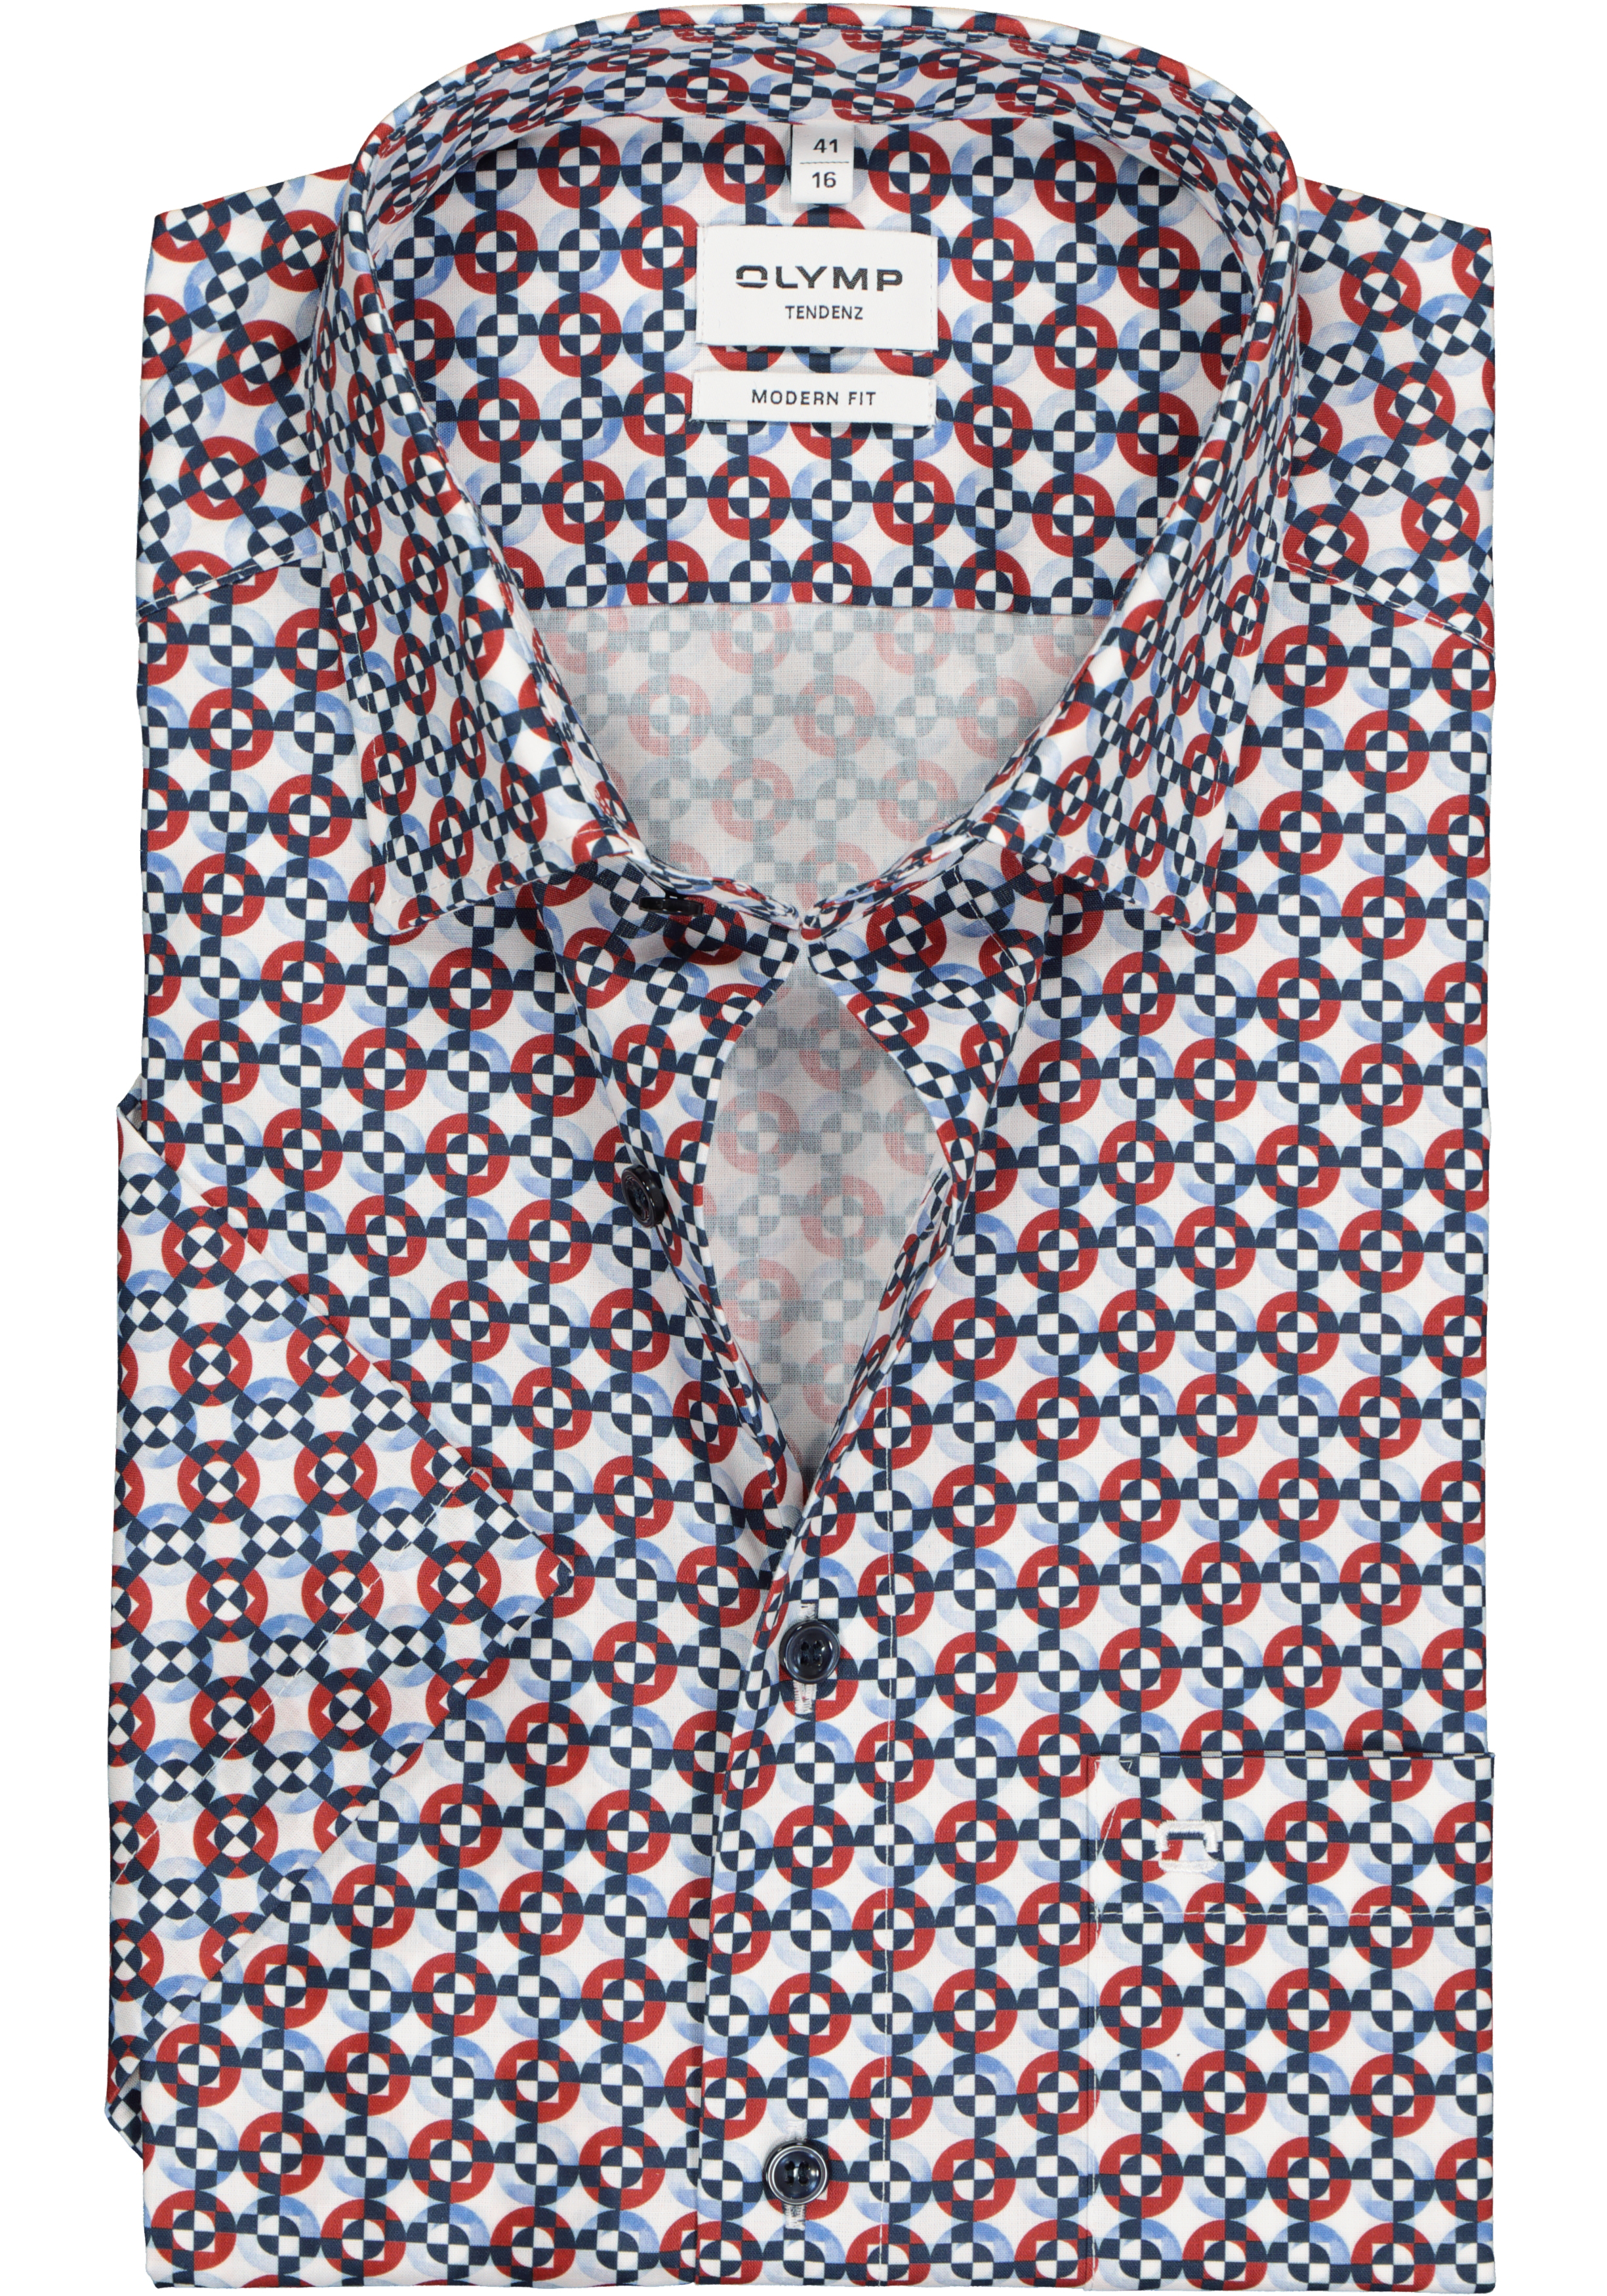 OLYMP modern fit overhemd, korte mouw, popeline, wit met blauw en rood dessin (contrast)